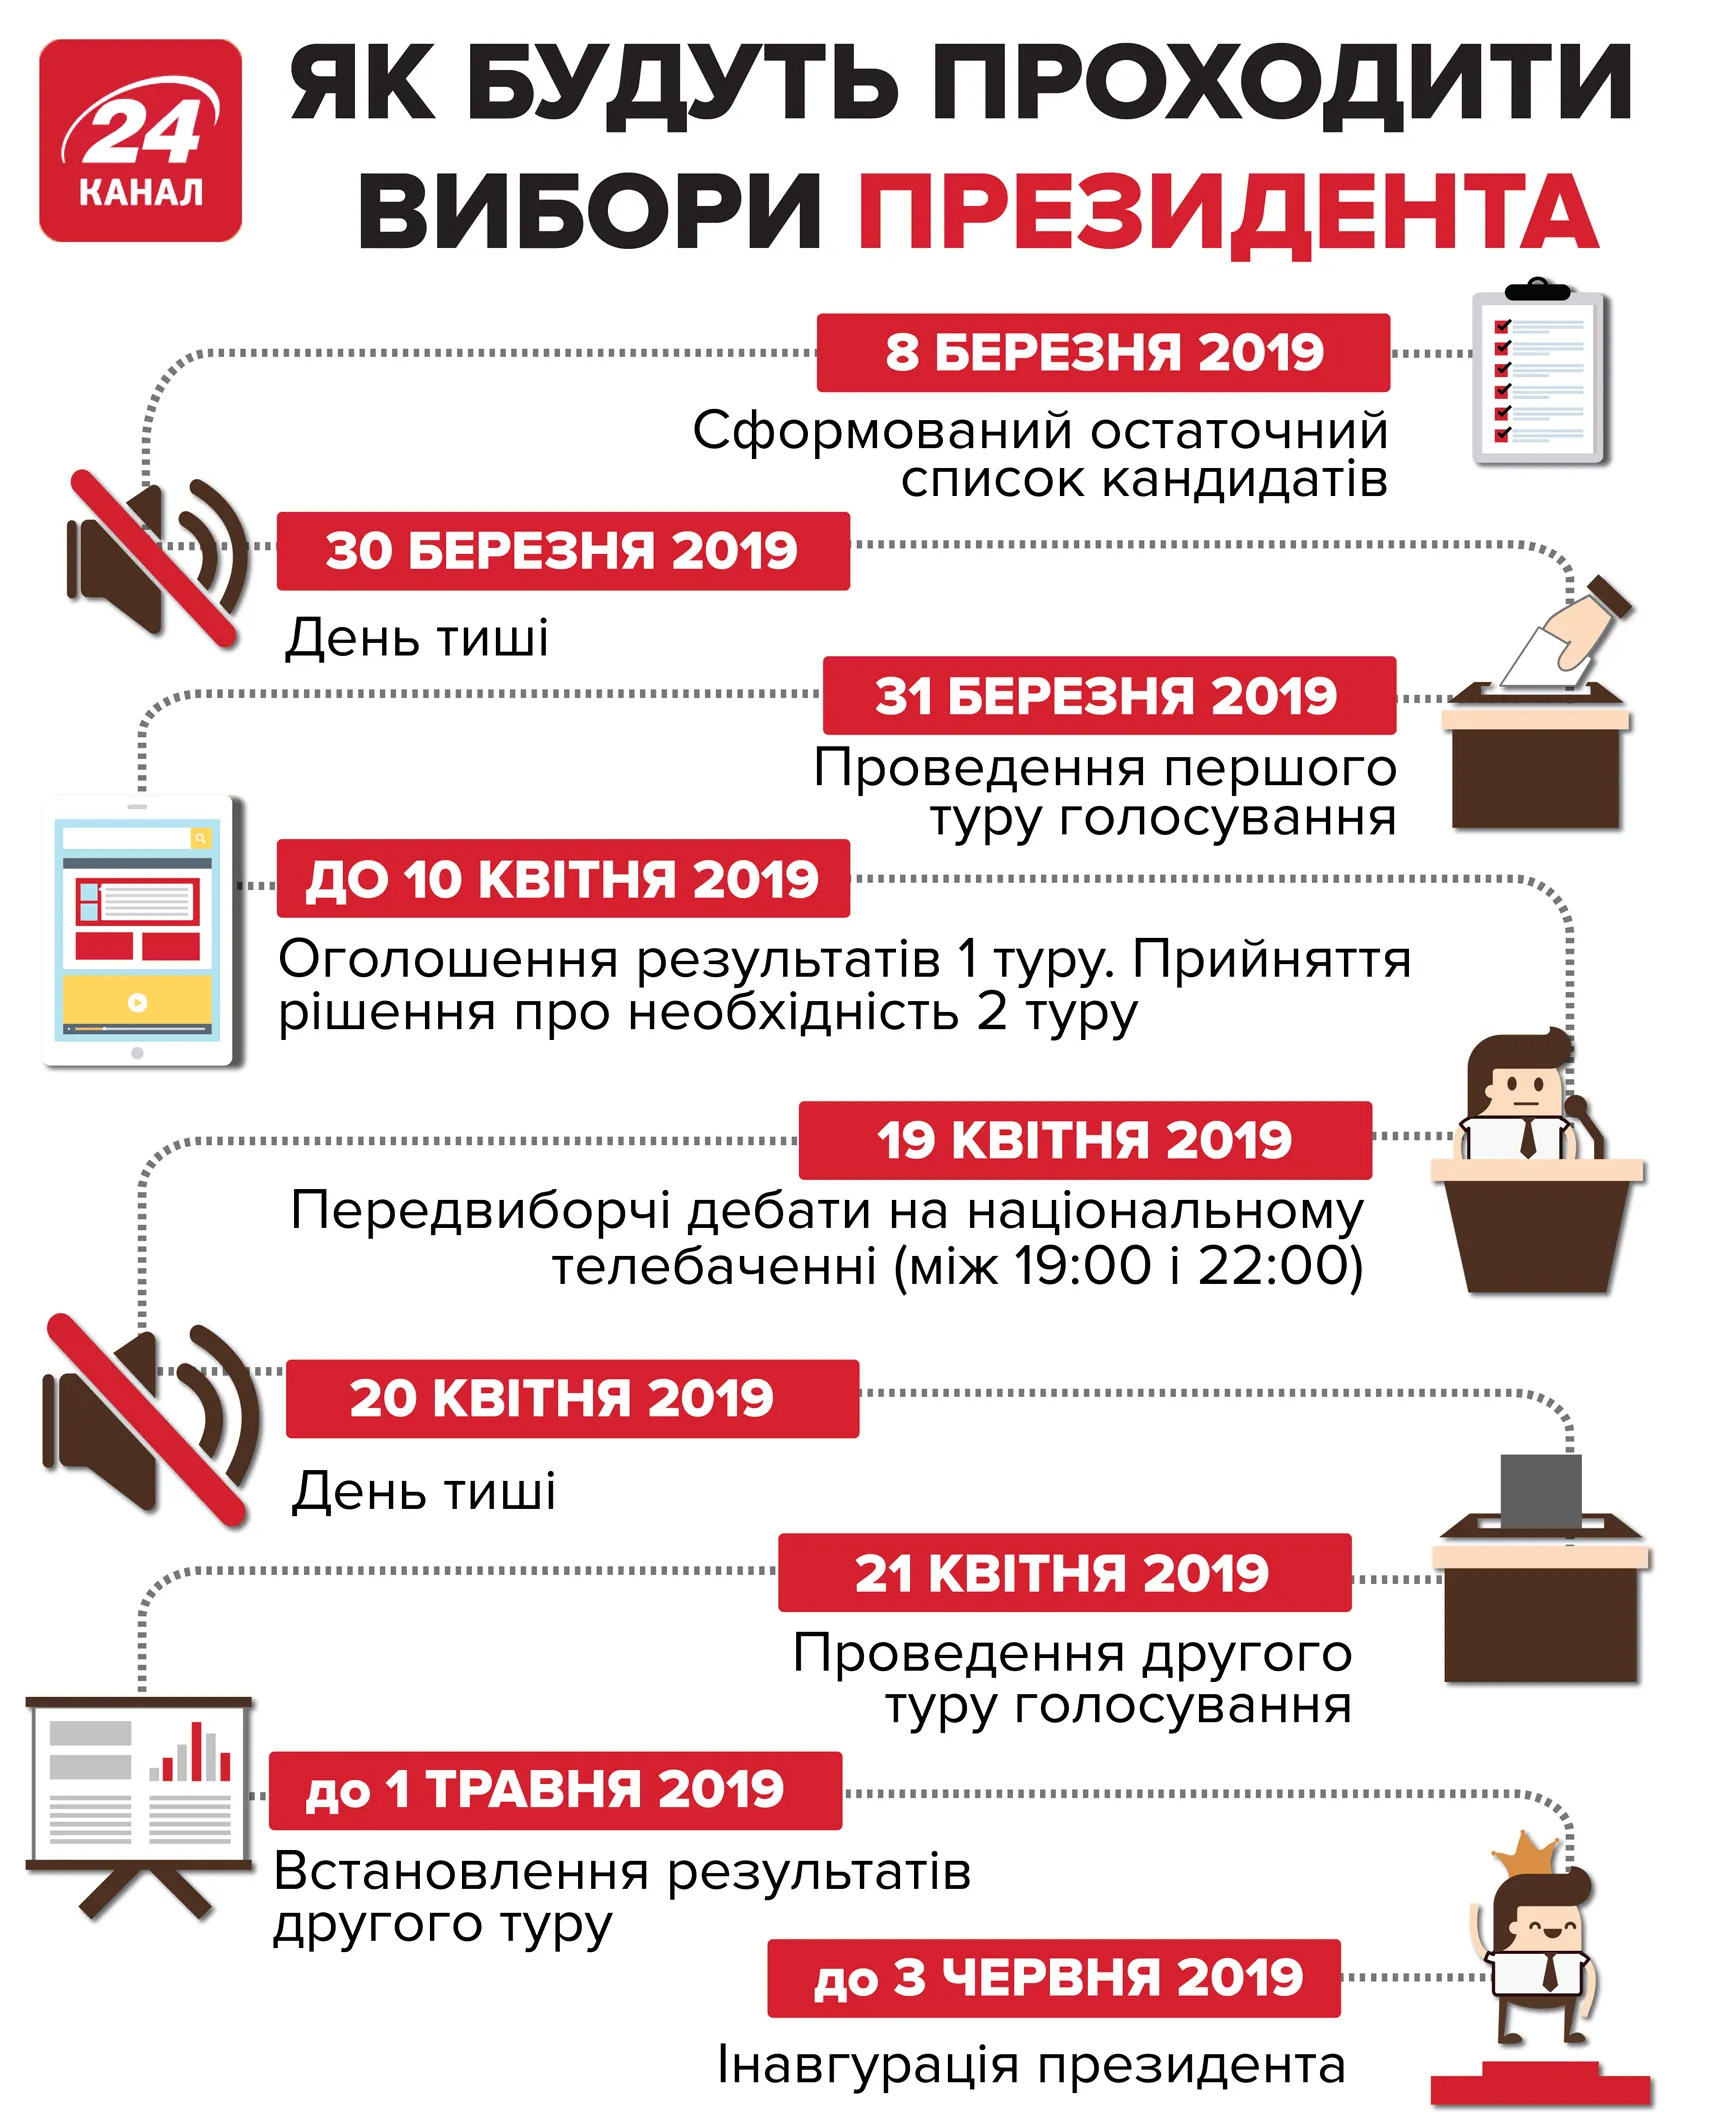 дата виборів президента України коли вибори в якій годині відкриваються дільниці